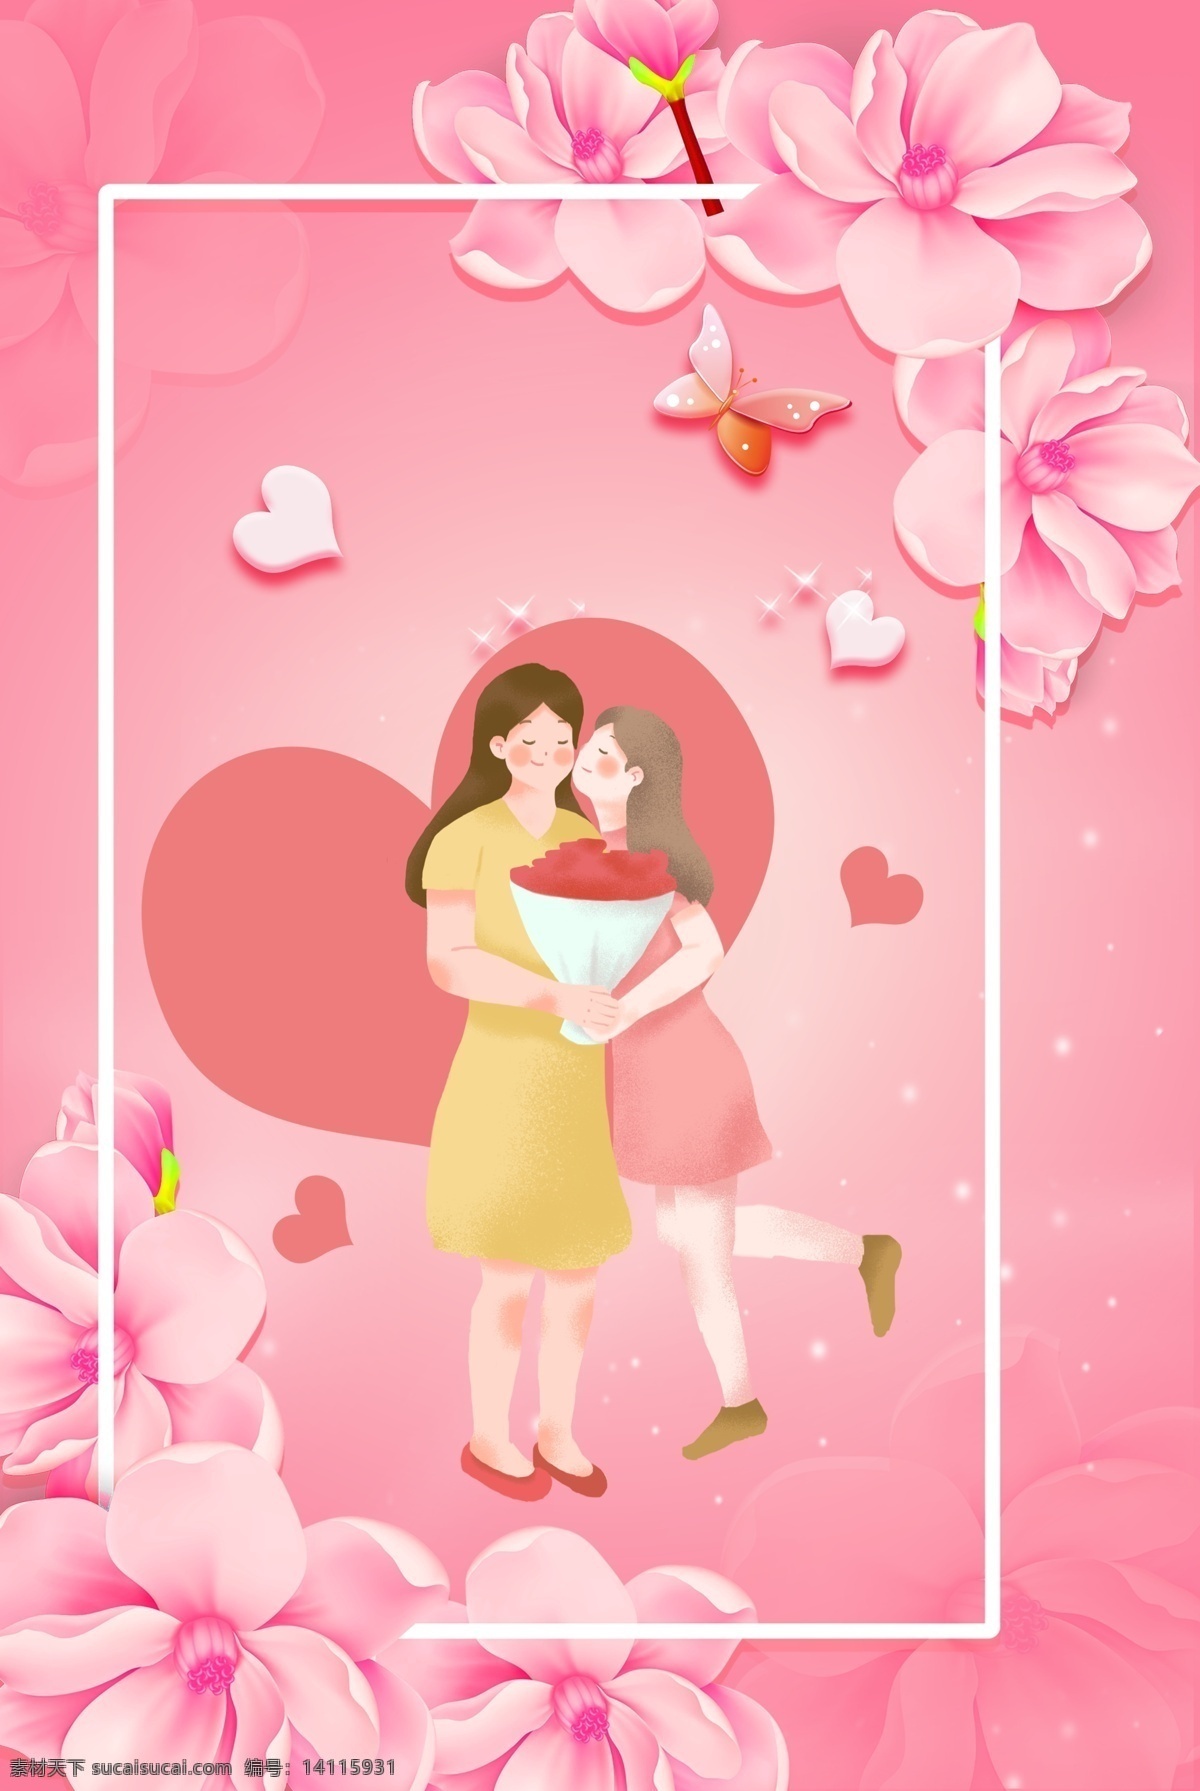 粉色 温馨 花卉 母亲节 海报 背景 文艺 清新 卡通 手绘 质感 纹理 边框